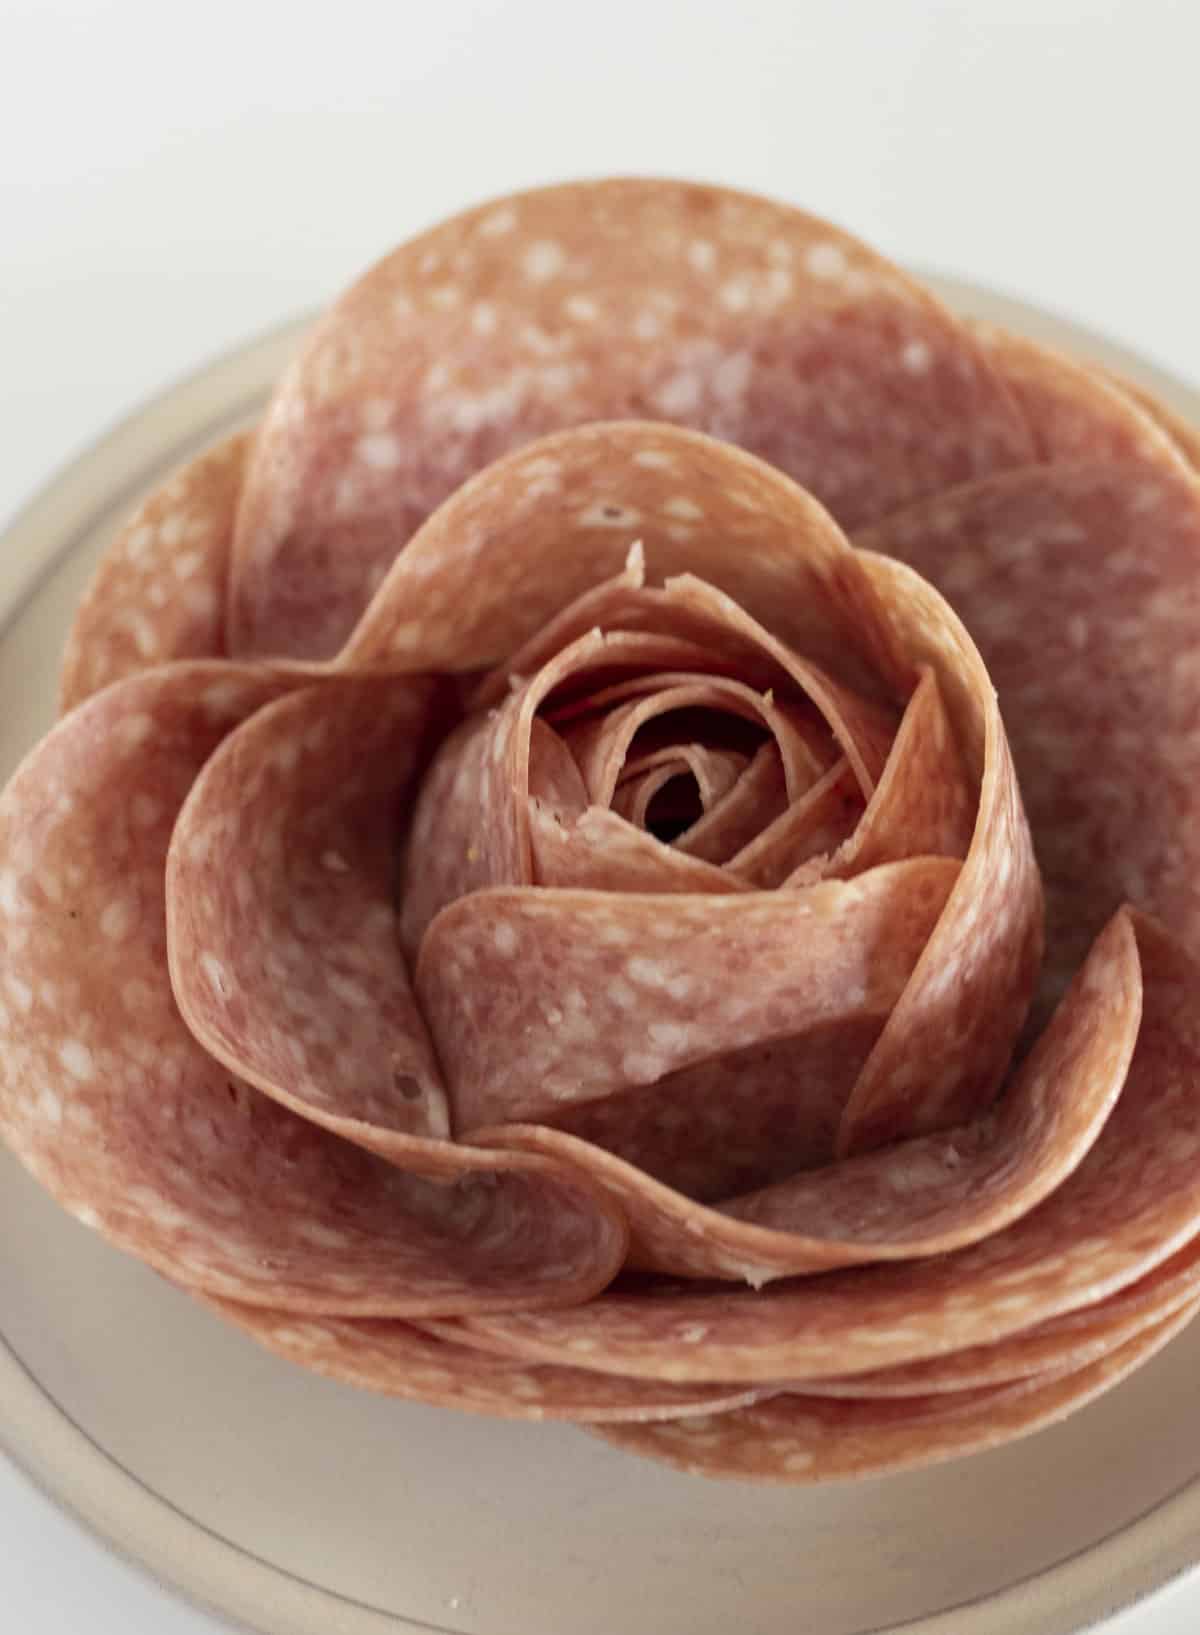 A close up photo of a salami rose.